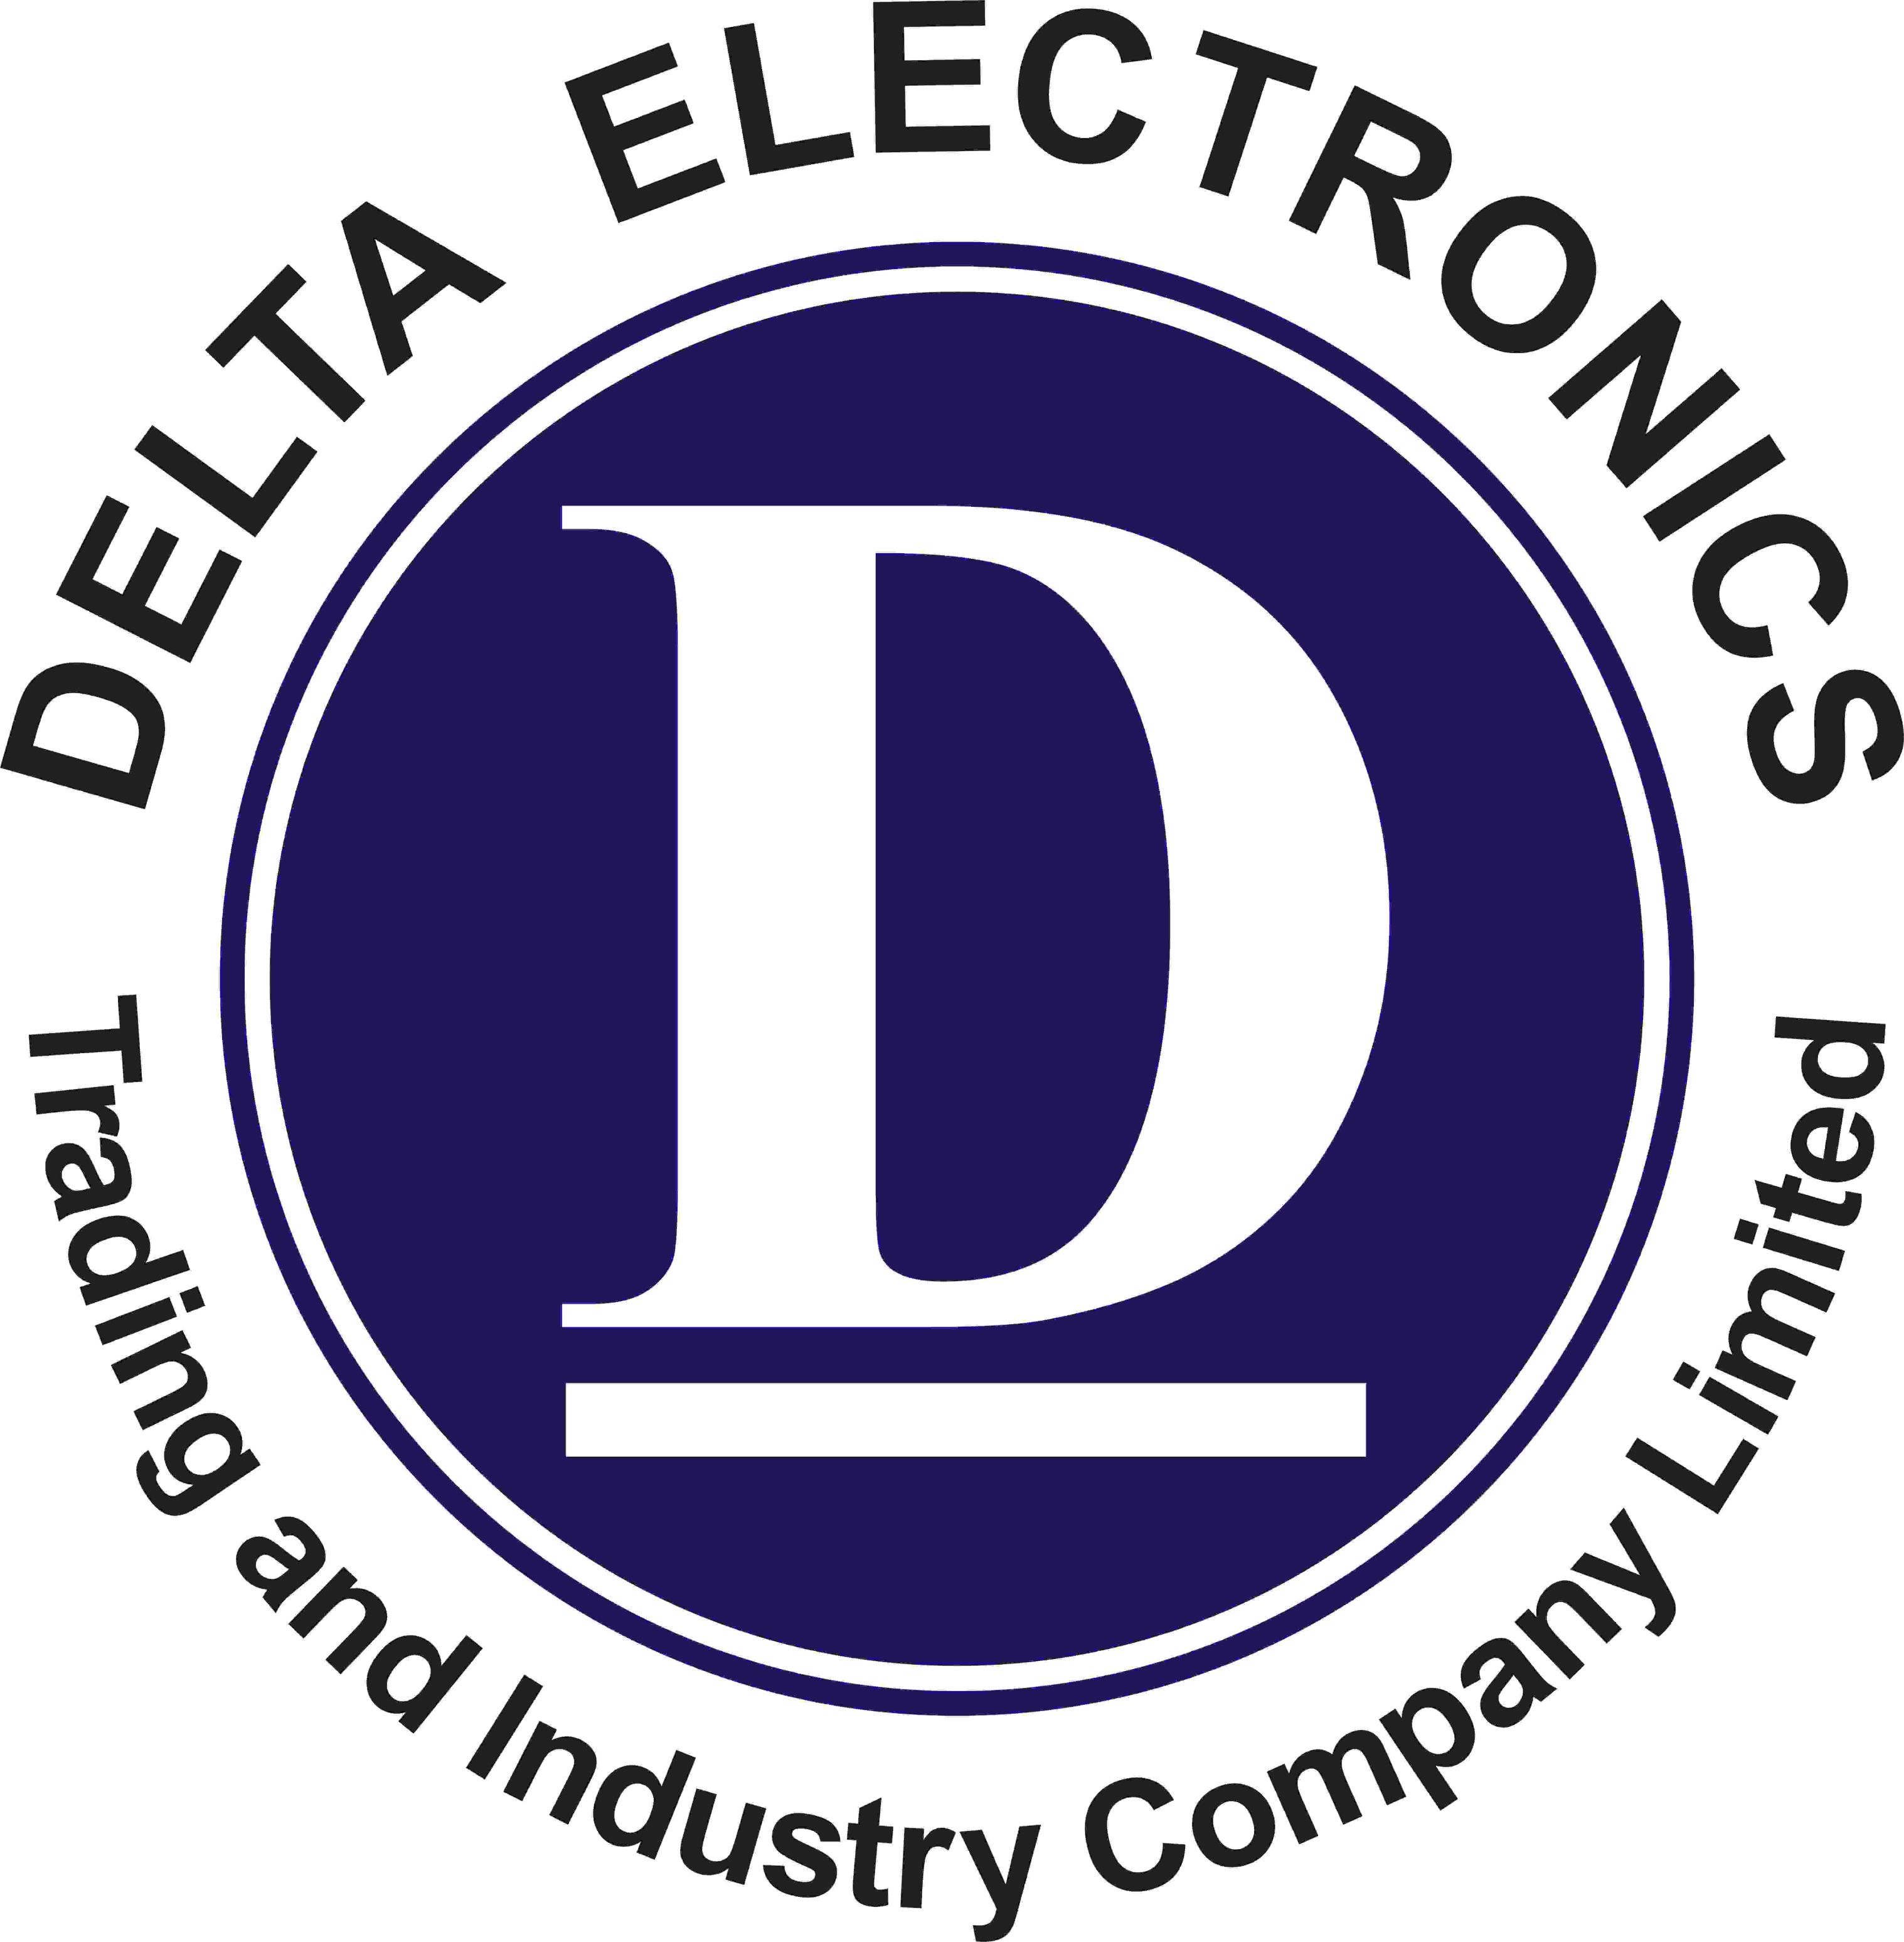 Réseau de distributeurs Origalys Électrochimie Tuquie Delta Electronics